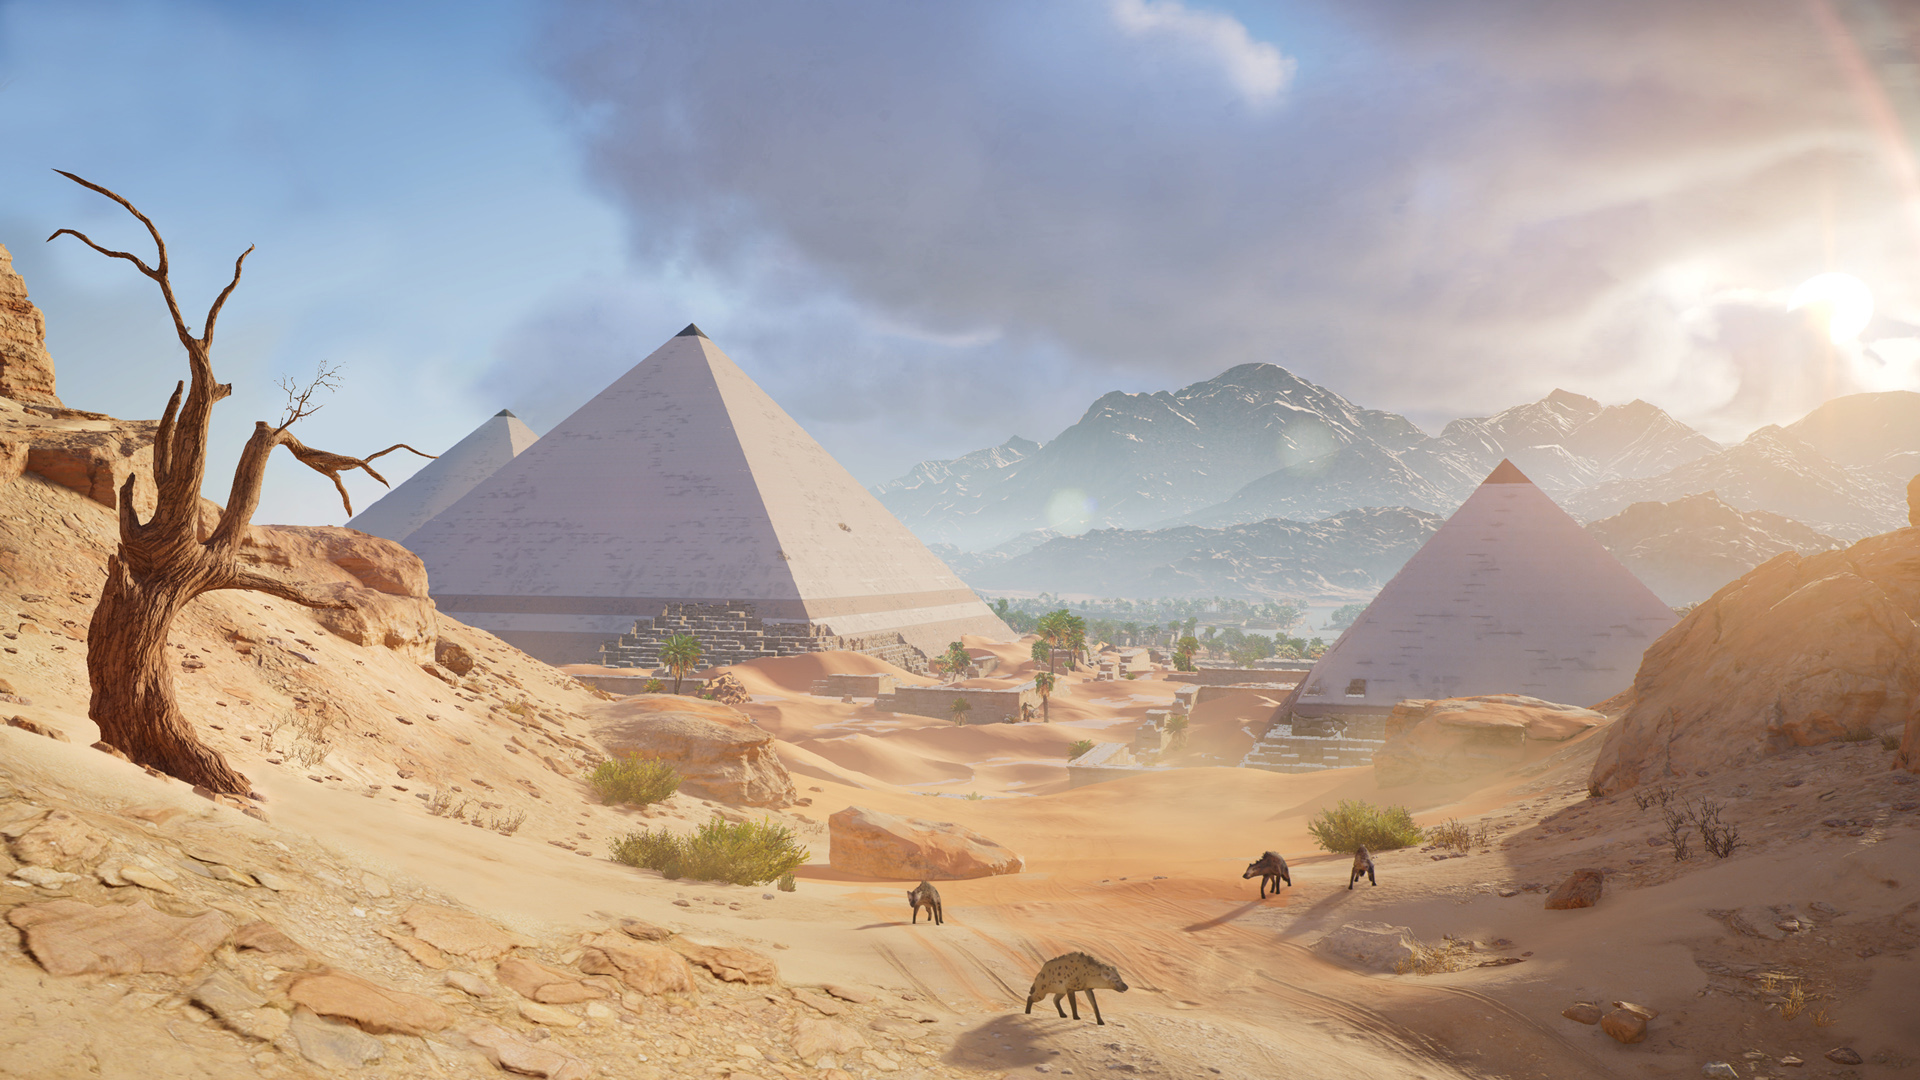 刺客信条,沙漠,埃及金字塔,桌面壁纸